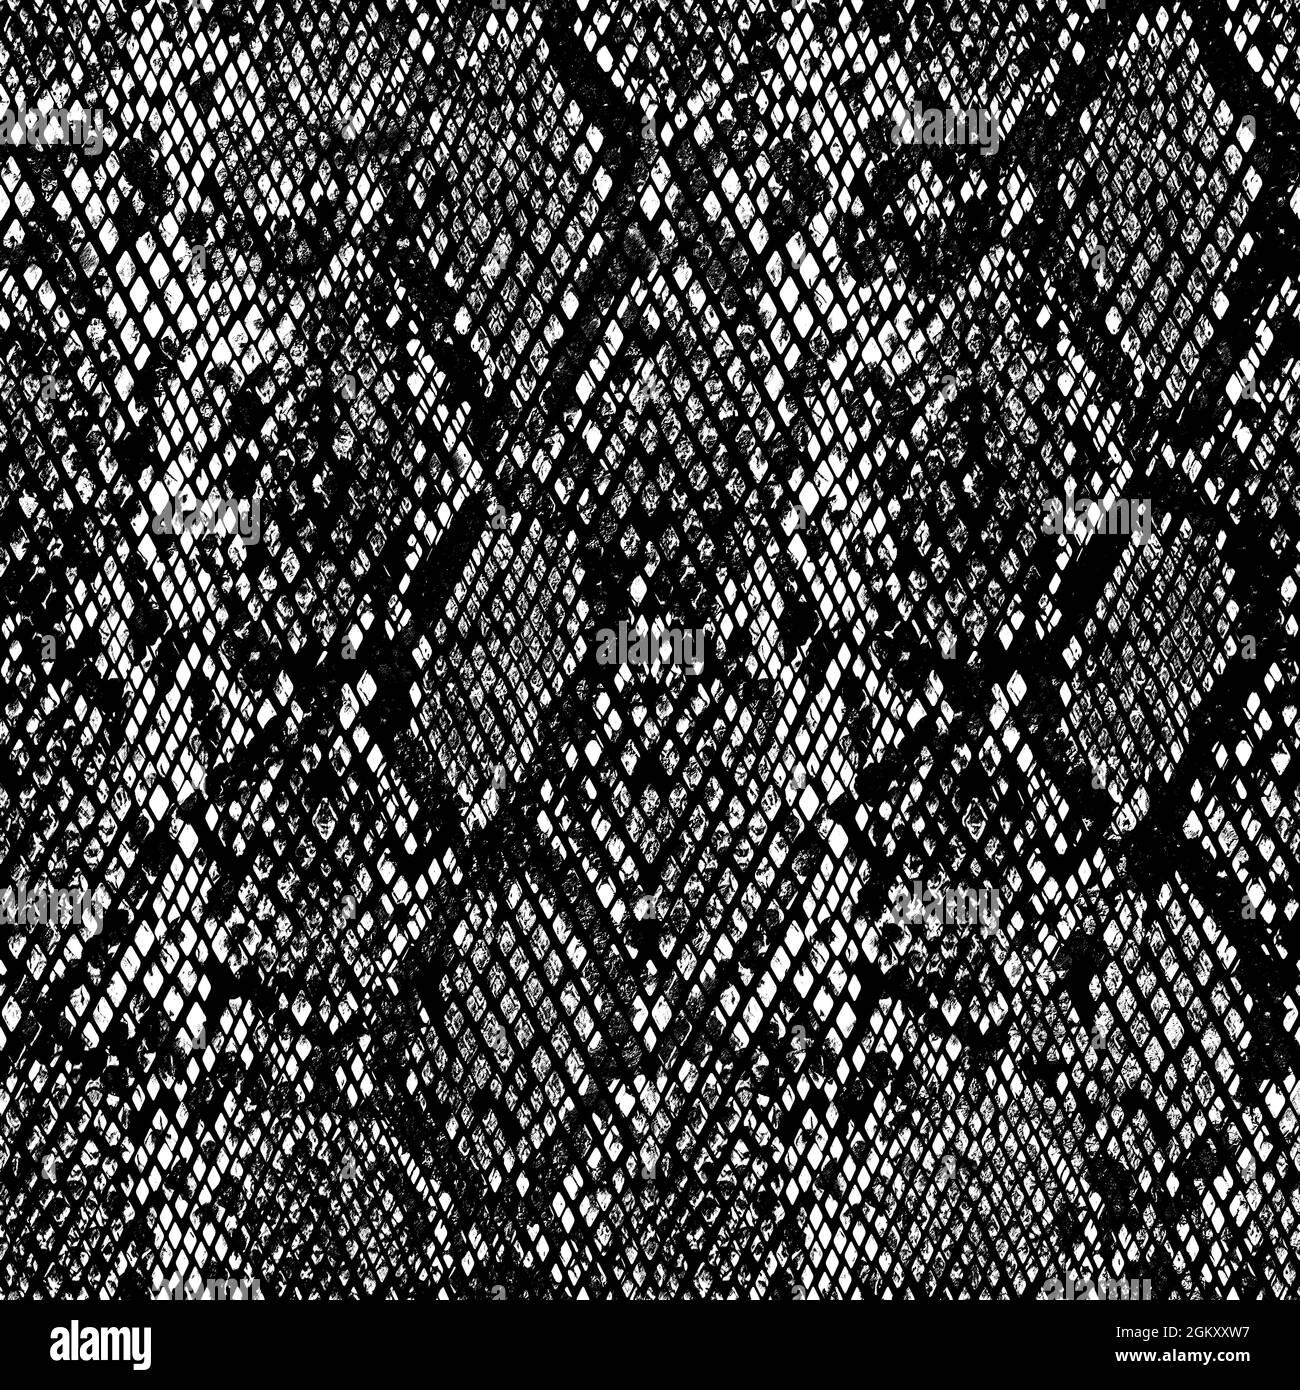 Diamond Snake Skin Wallpaper Silver Charcoal  Wallpaper from I Love  Wallpaper UK